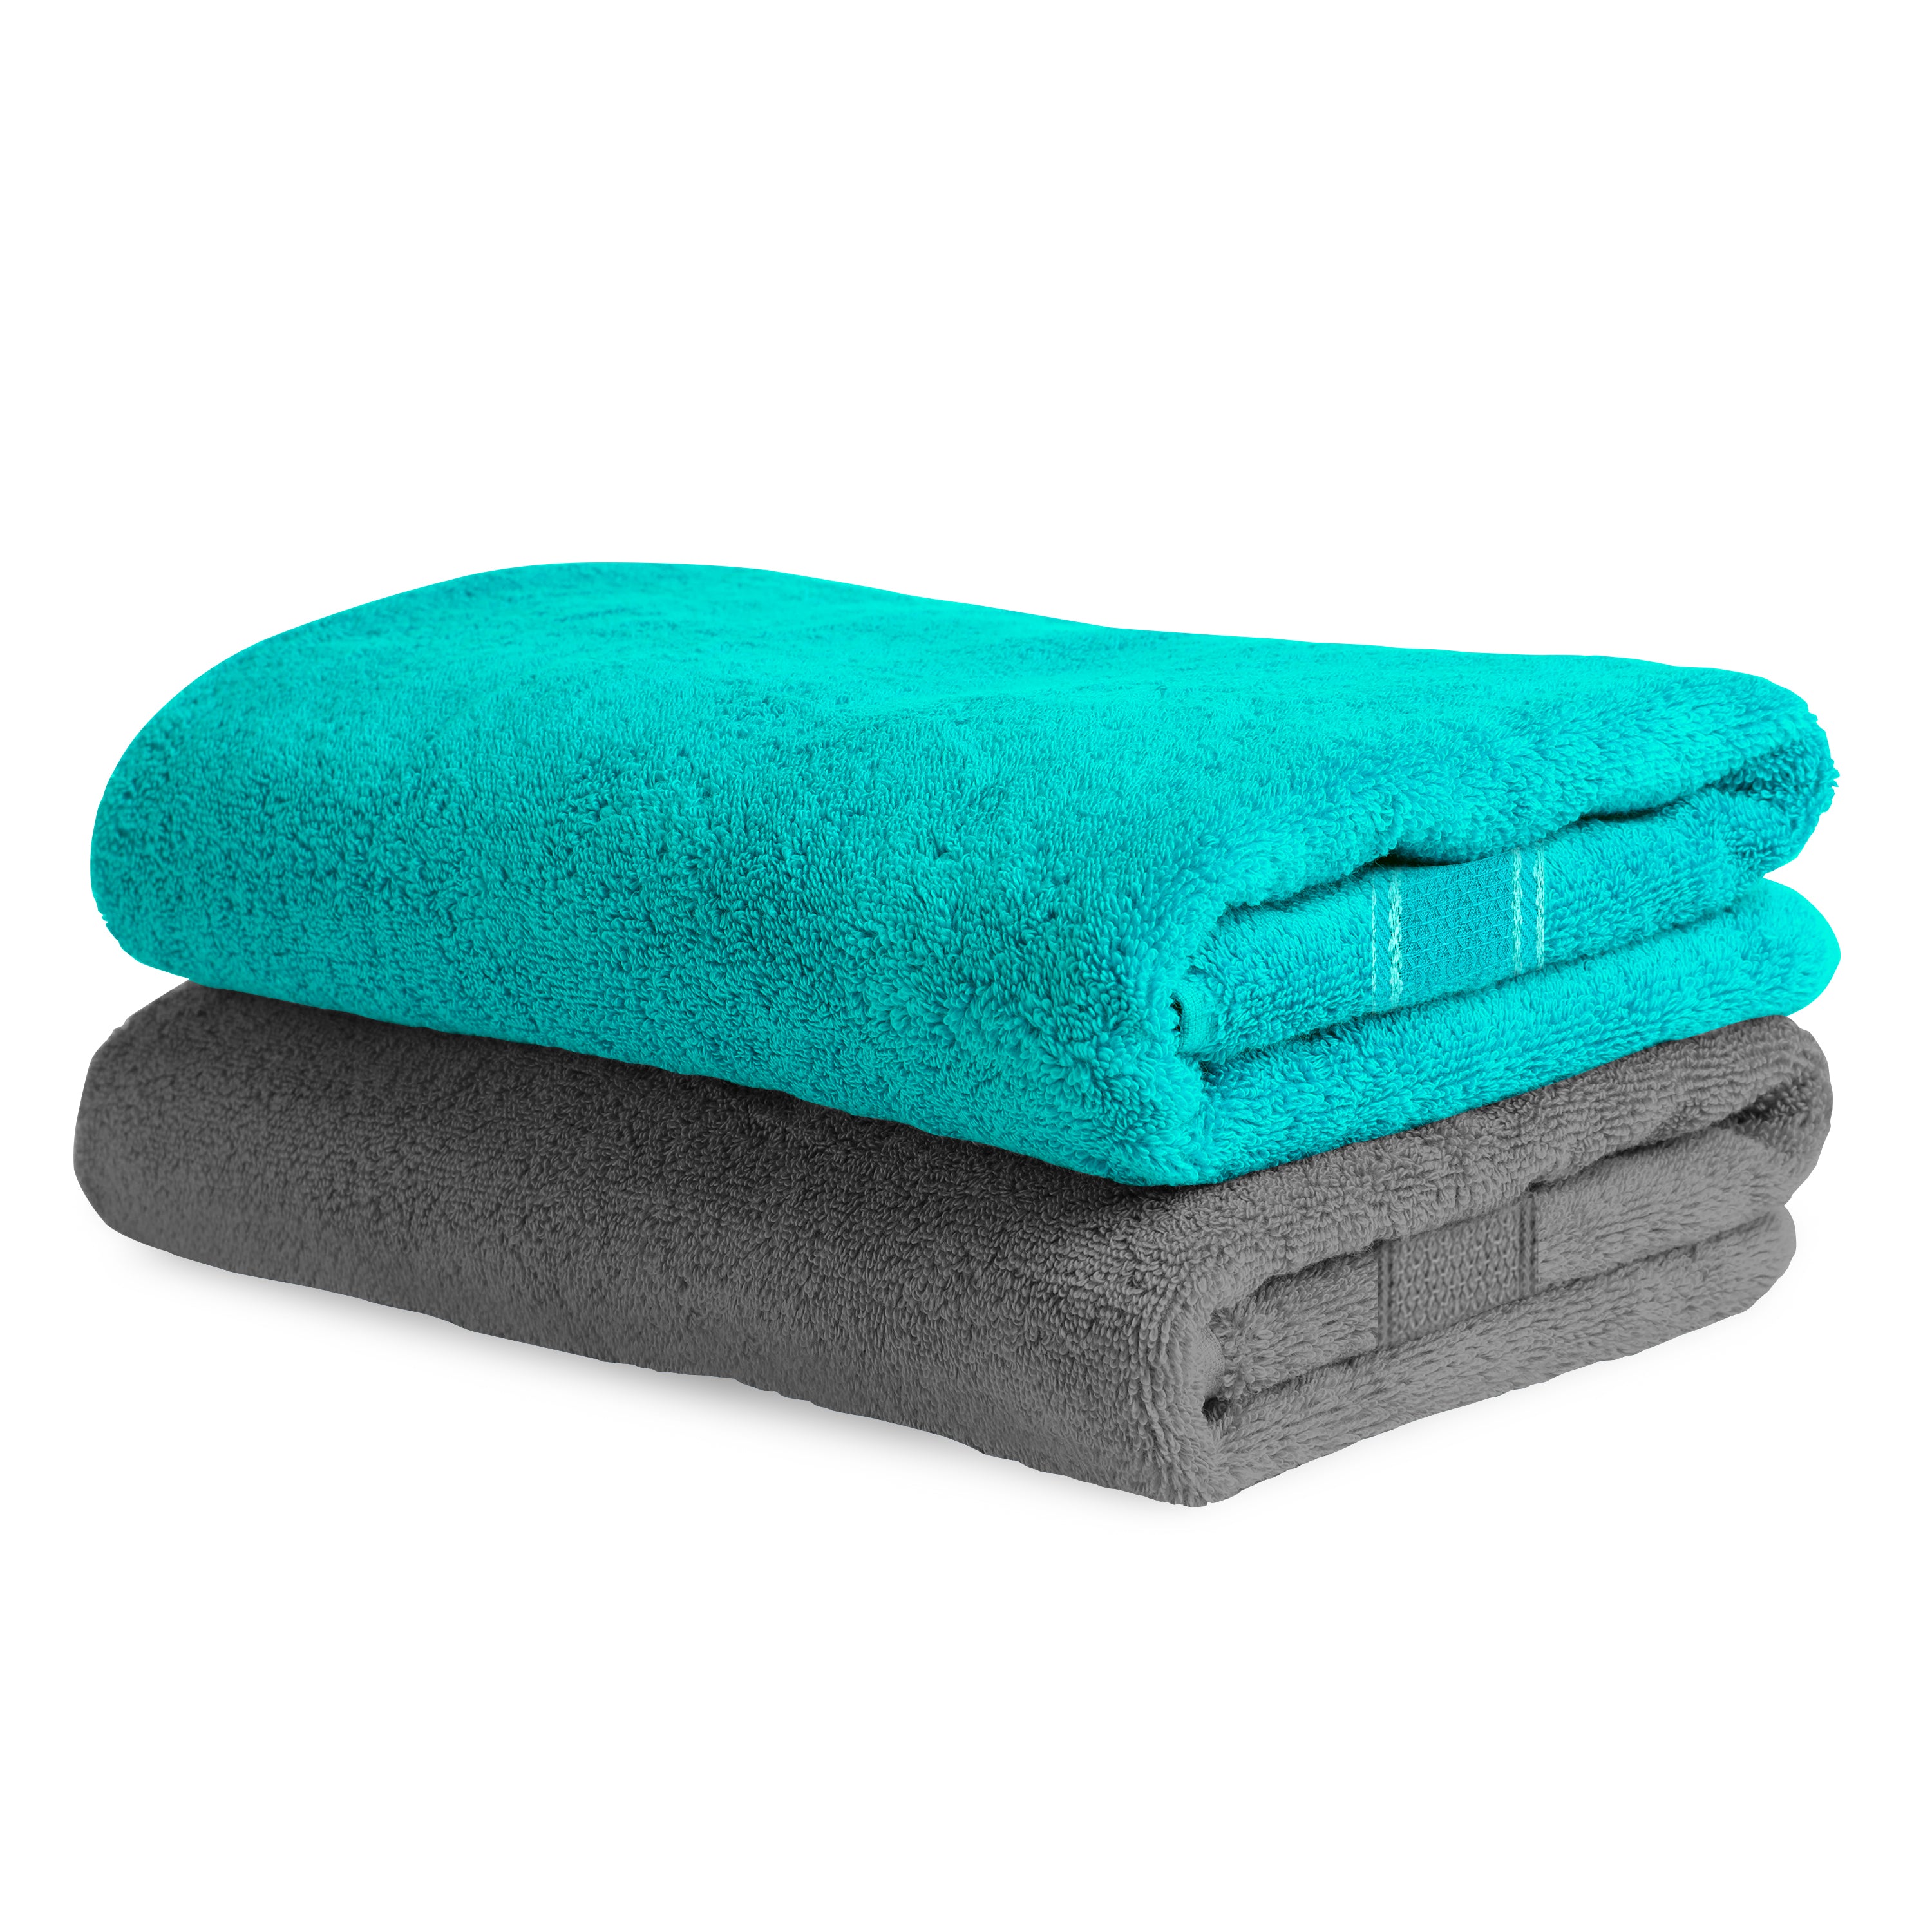 Aquacado 68 x 136 cm Bath Towel Set of 2 Charcoal Grey & Turq Blue